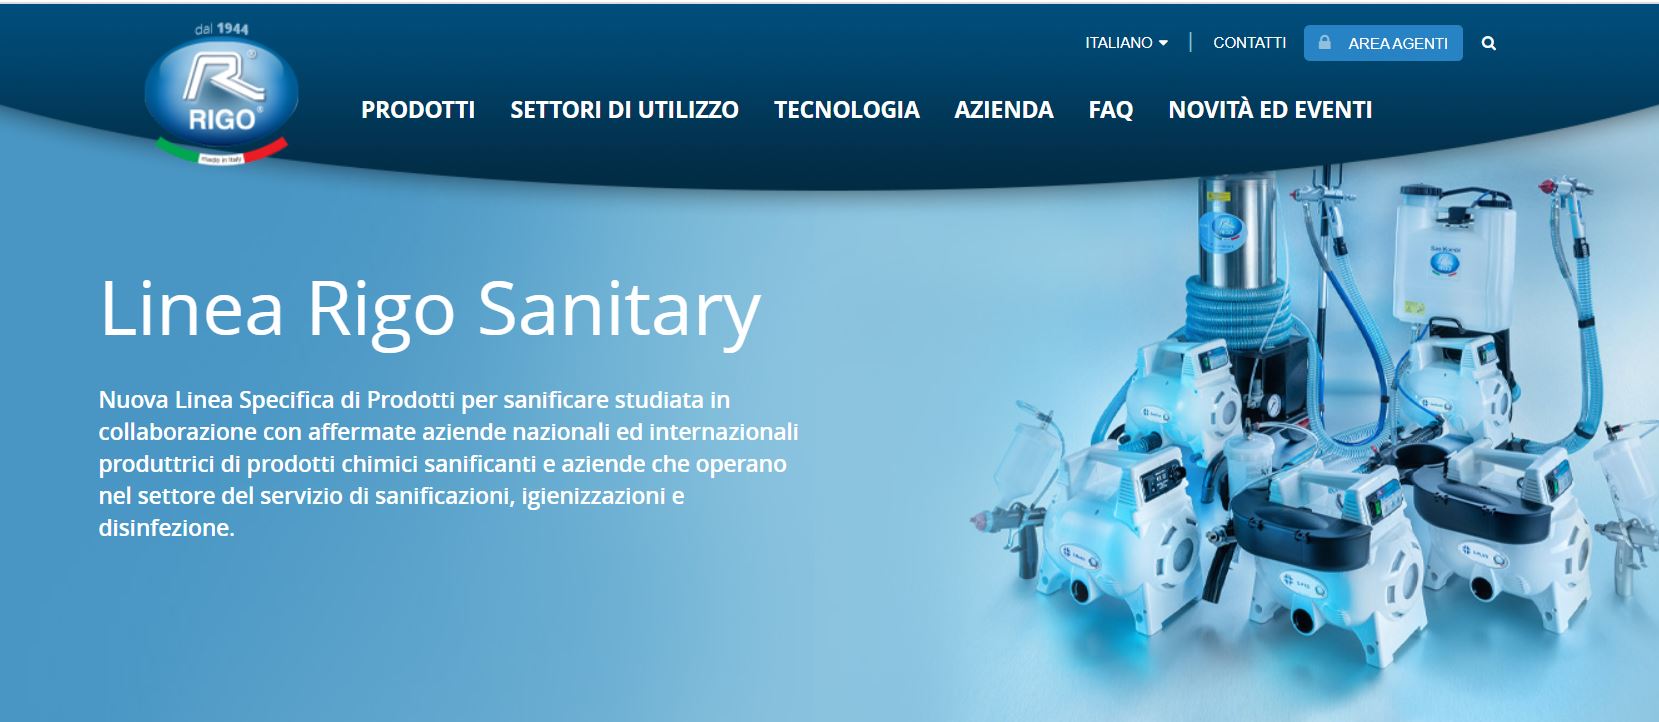 immagine-sito-Linea-Rigo-Sanitary